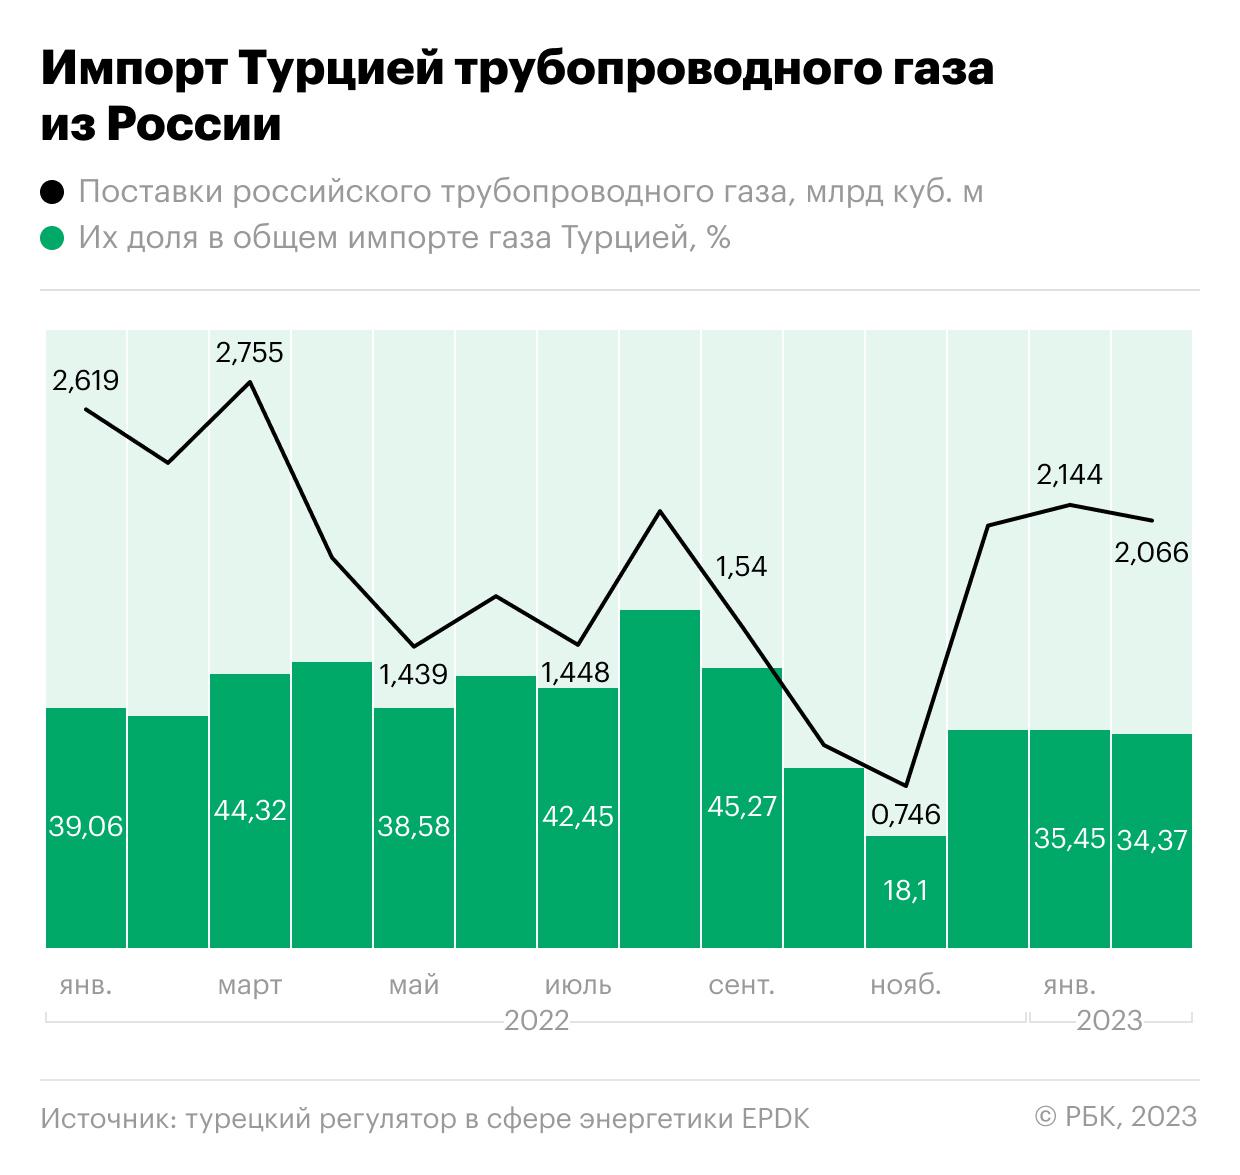 Как нарастили Россия и Турция торговлю в прошлом году. Инфографика